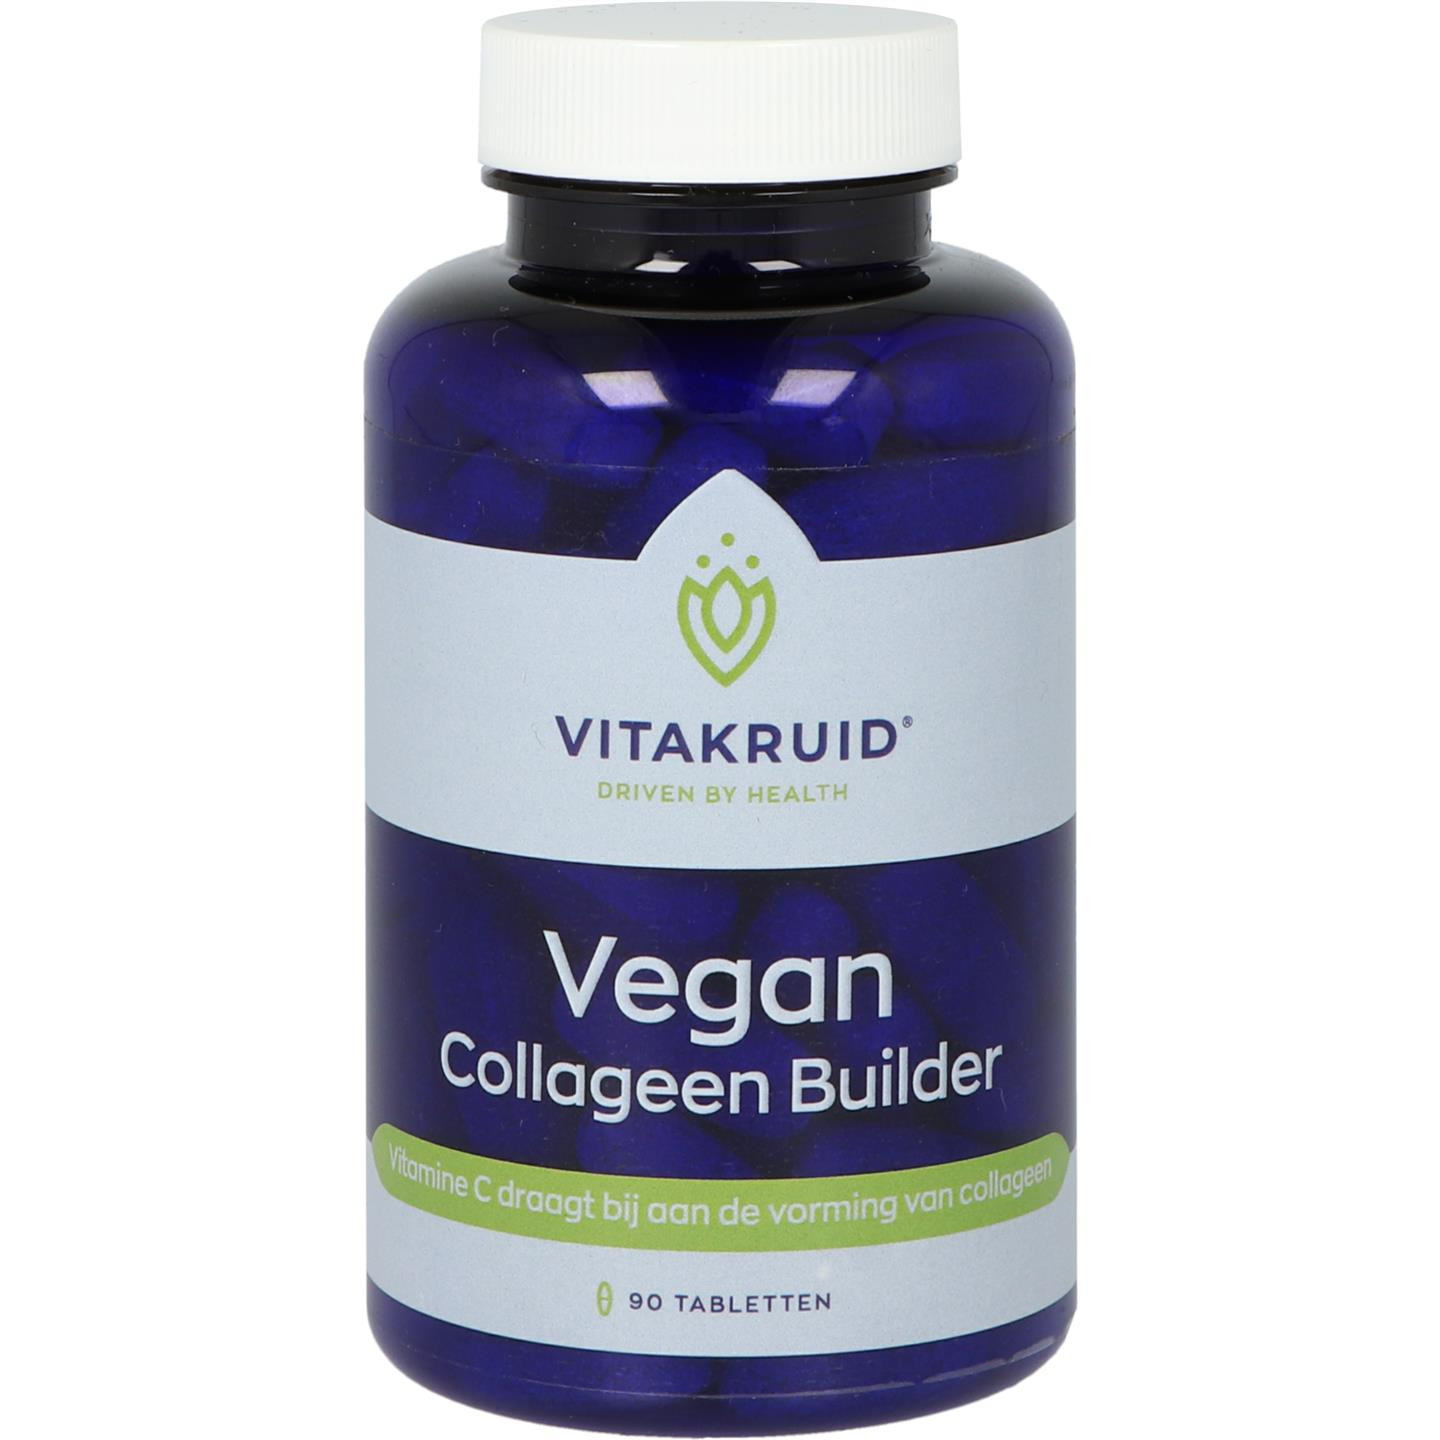 Vegan Collageen Builder